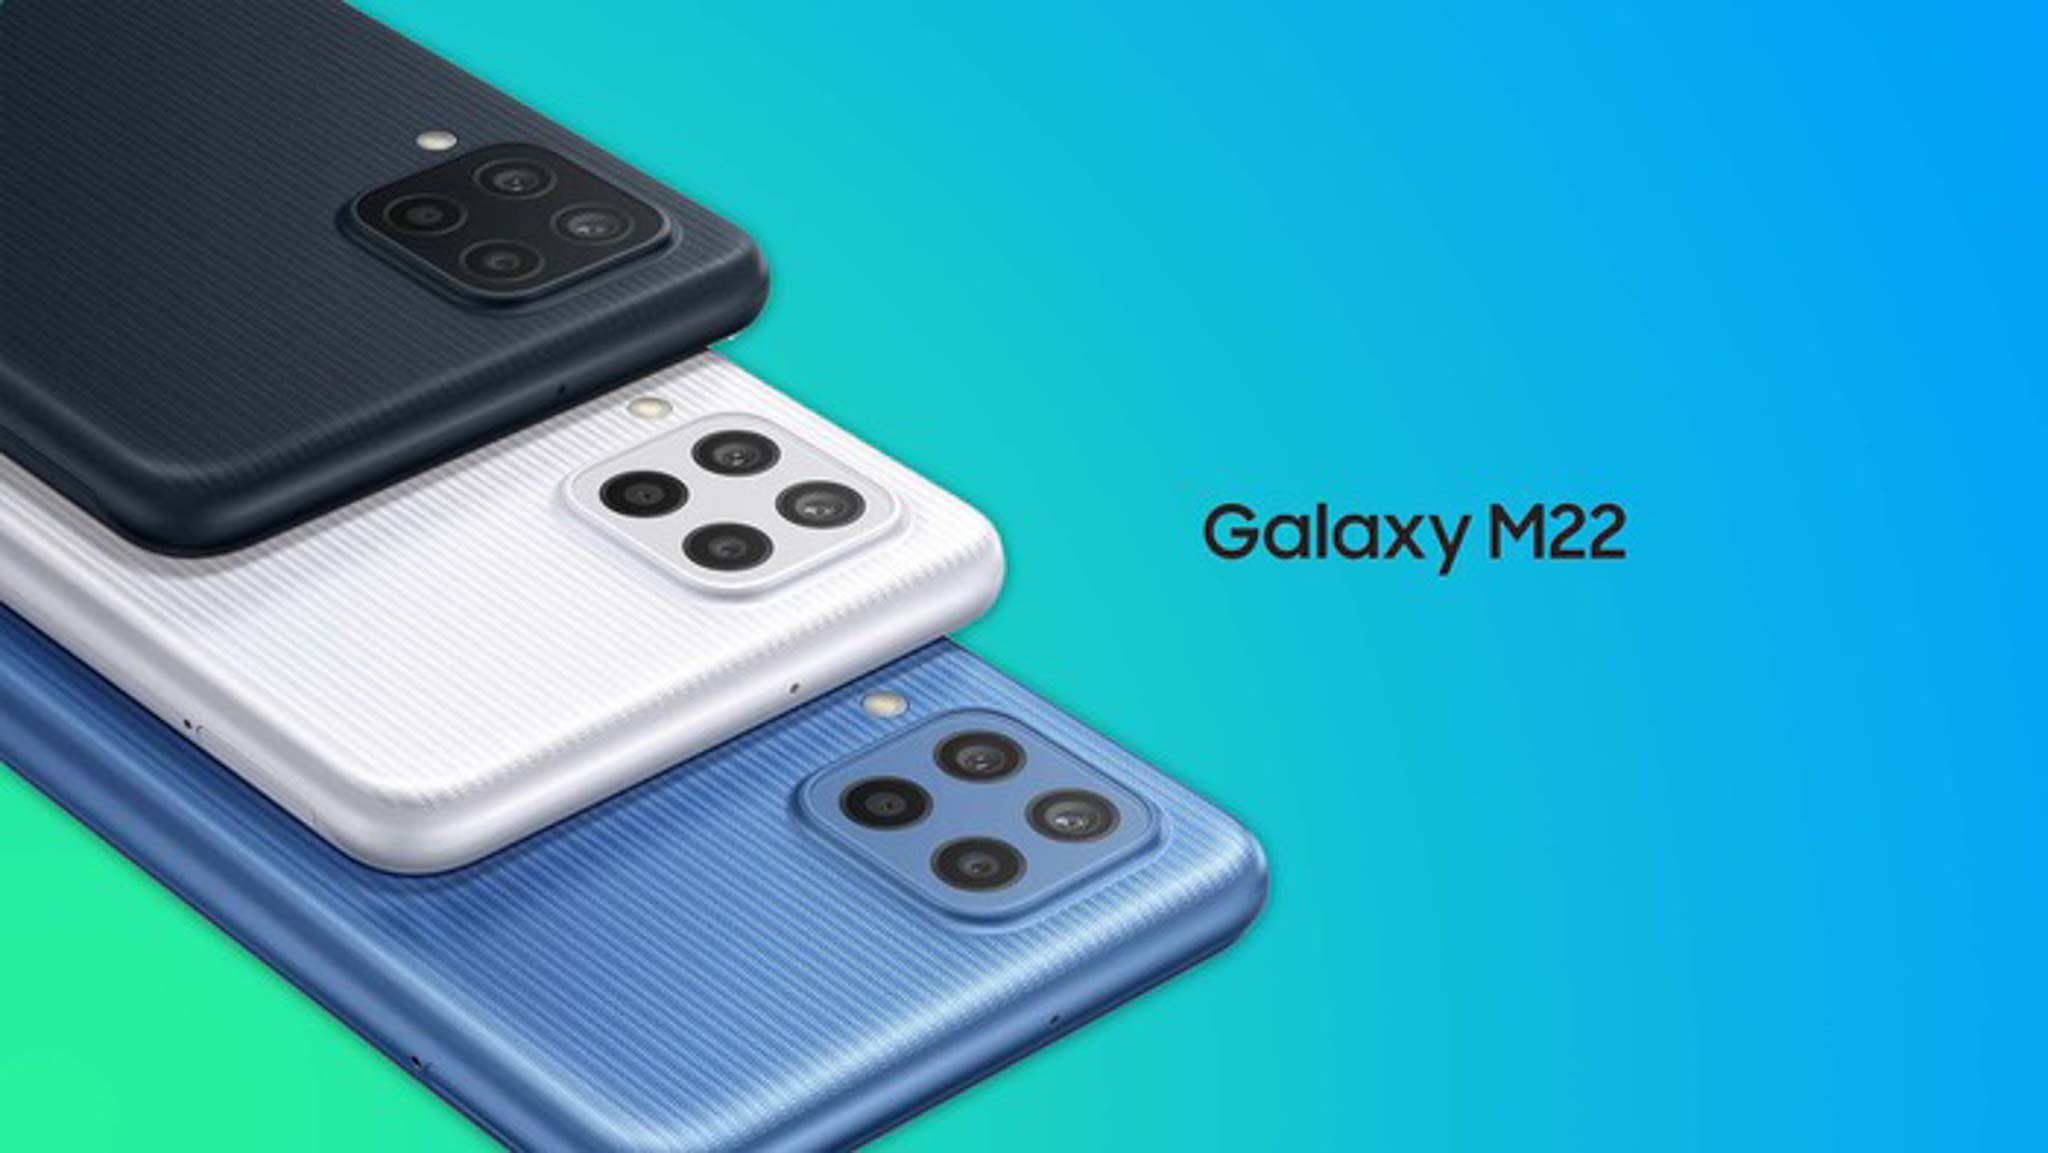 Galaxy M22 ghi điểm với màn hình sống động, hiệu năng mạnh mẽ cùng dung lượng pin khủng